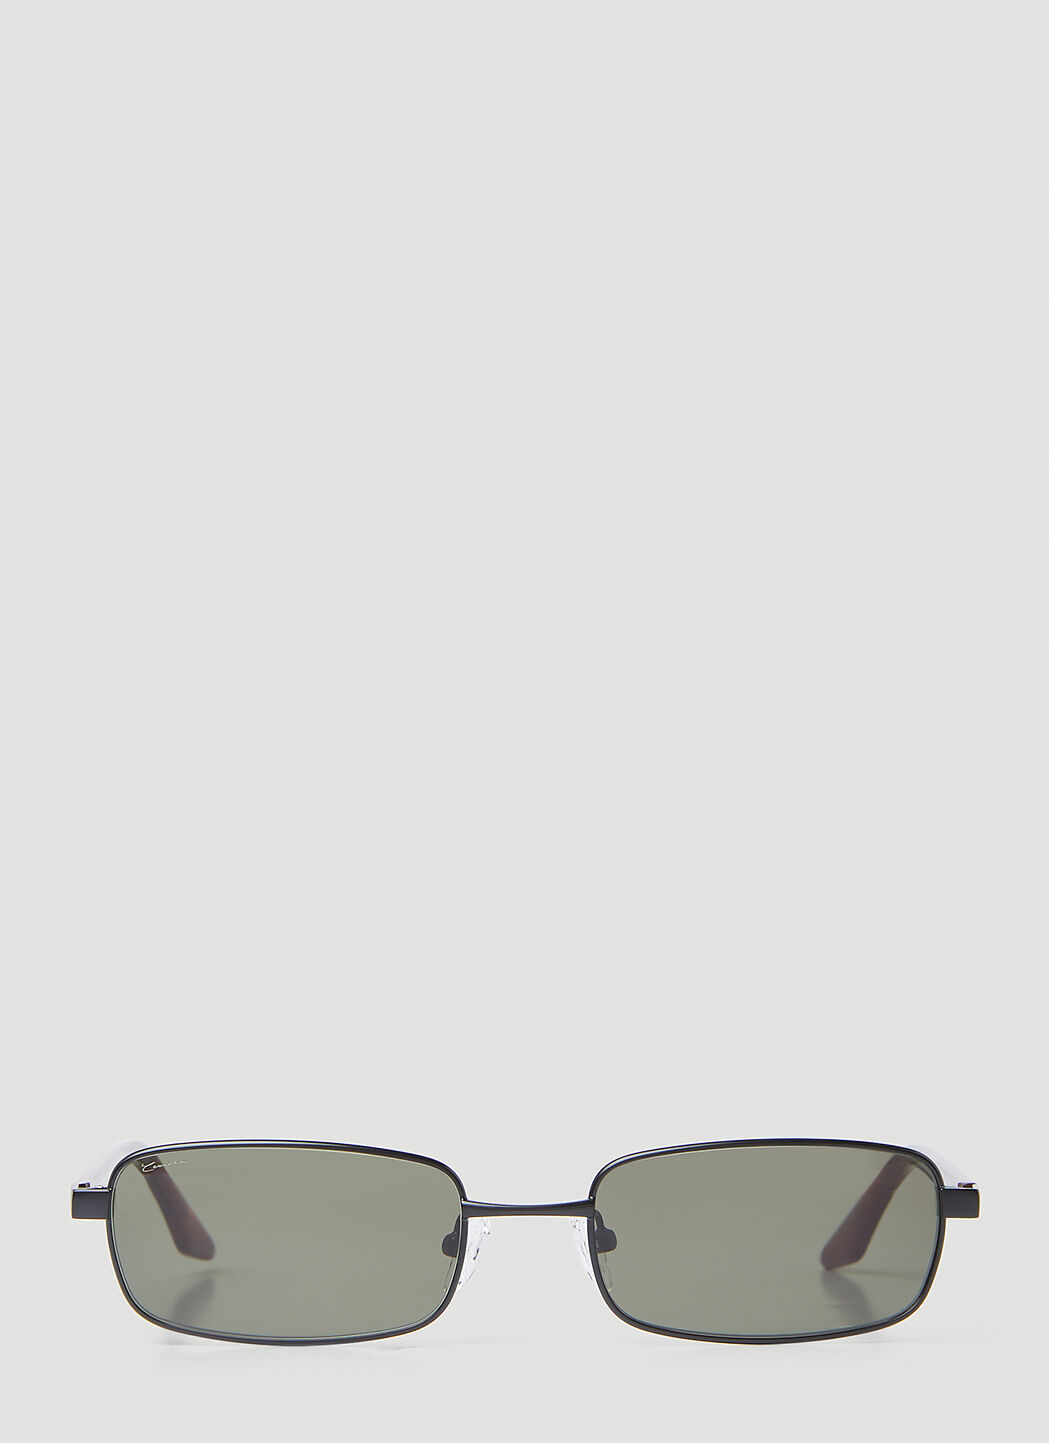 Lexxola Kenny Sunglasses 黑色 lxx0353006